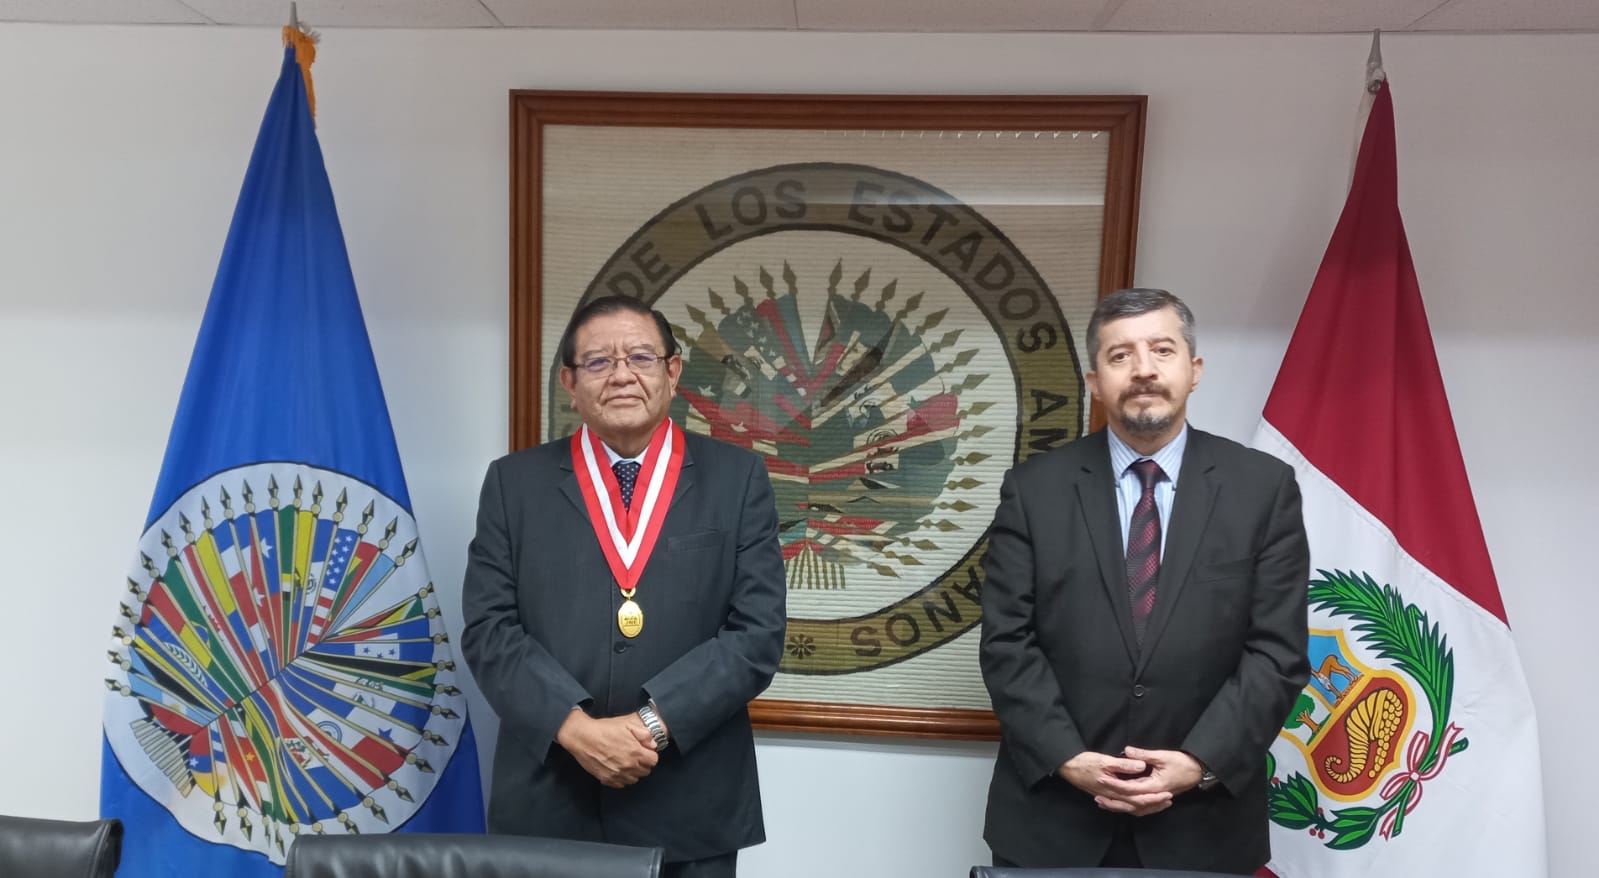 Jorge Luis Salas Arenas, Presidente del  Jurado Nacional de Elecciones   visito la Sede de la  OEA en Lima. Sostuvo una reunión con el Representante Miguel Angel Trinidad para informar sobre el actual proceso electoral para autoridades regionales y municipales en 2022.(27 de mayo de 2022)